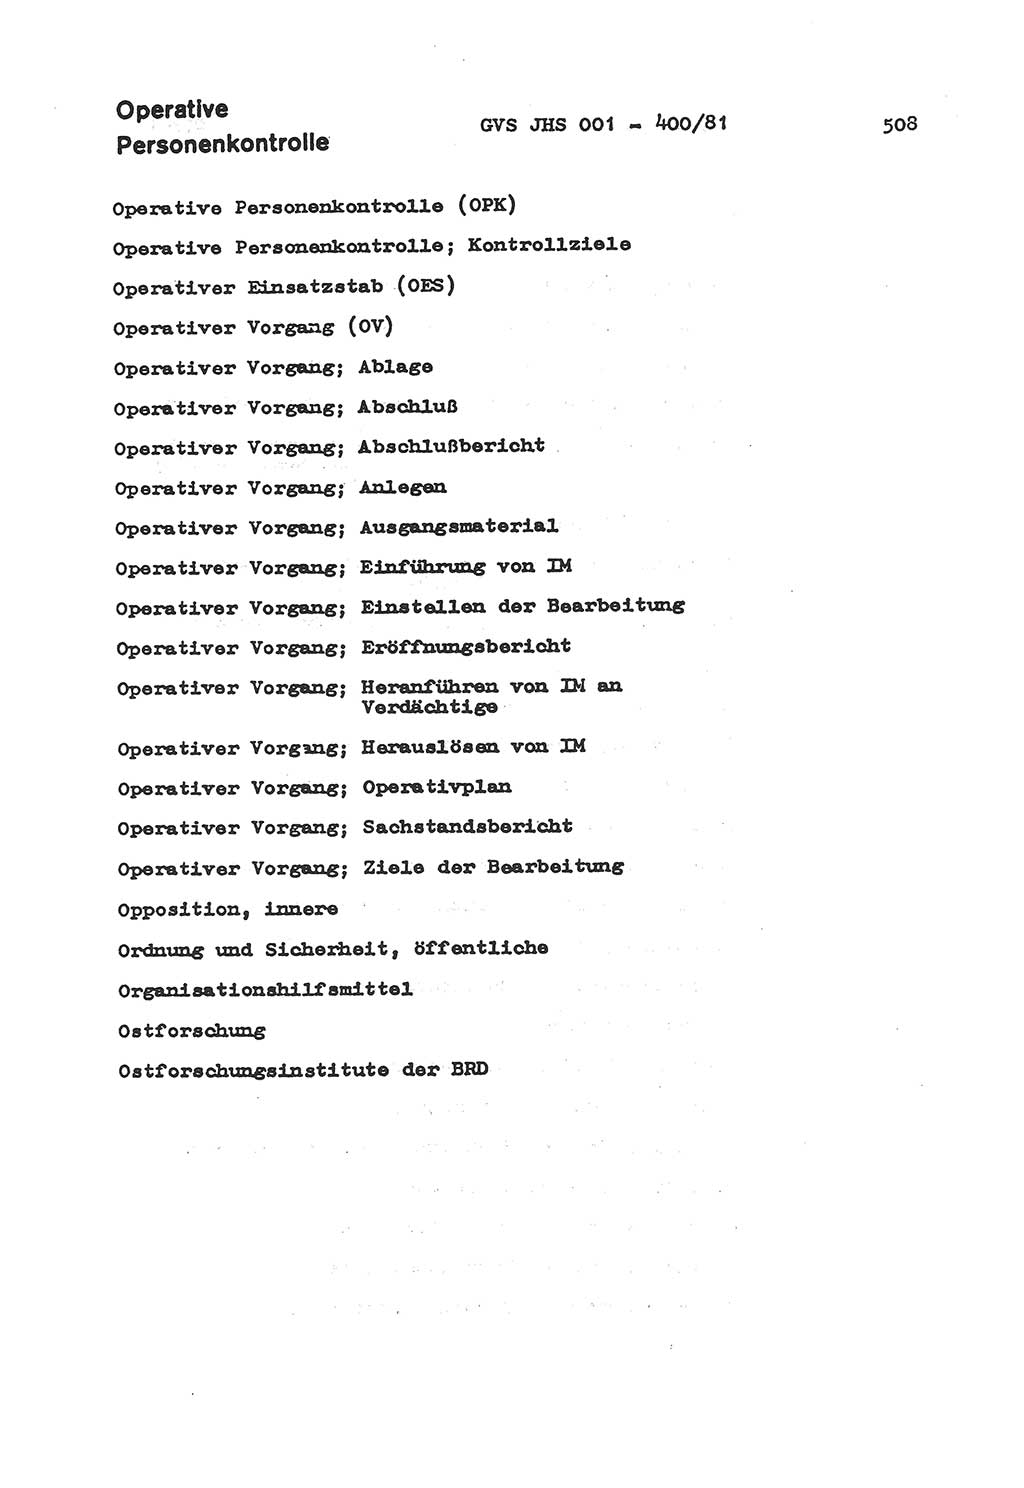 Wörterbuch der politisch-operativen Arbeit, Ministerium für Staatssicherheit (MfS) [Deutsche Demokratische Republik (DDR)], Juristische Hochschule (JHS), Geheime Verschlußsache (GVS) o001-400/81, Potsdam 1985, Blatt 508 (Wb. pol.-op. Arb. MfS DDR JHS GVS o001-400/81 1985, Bl. 508)